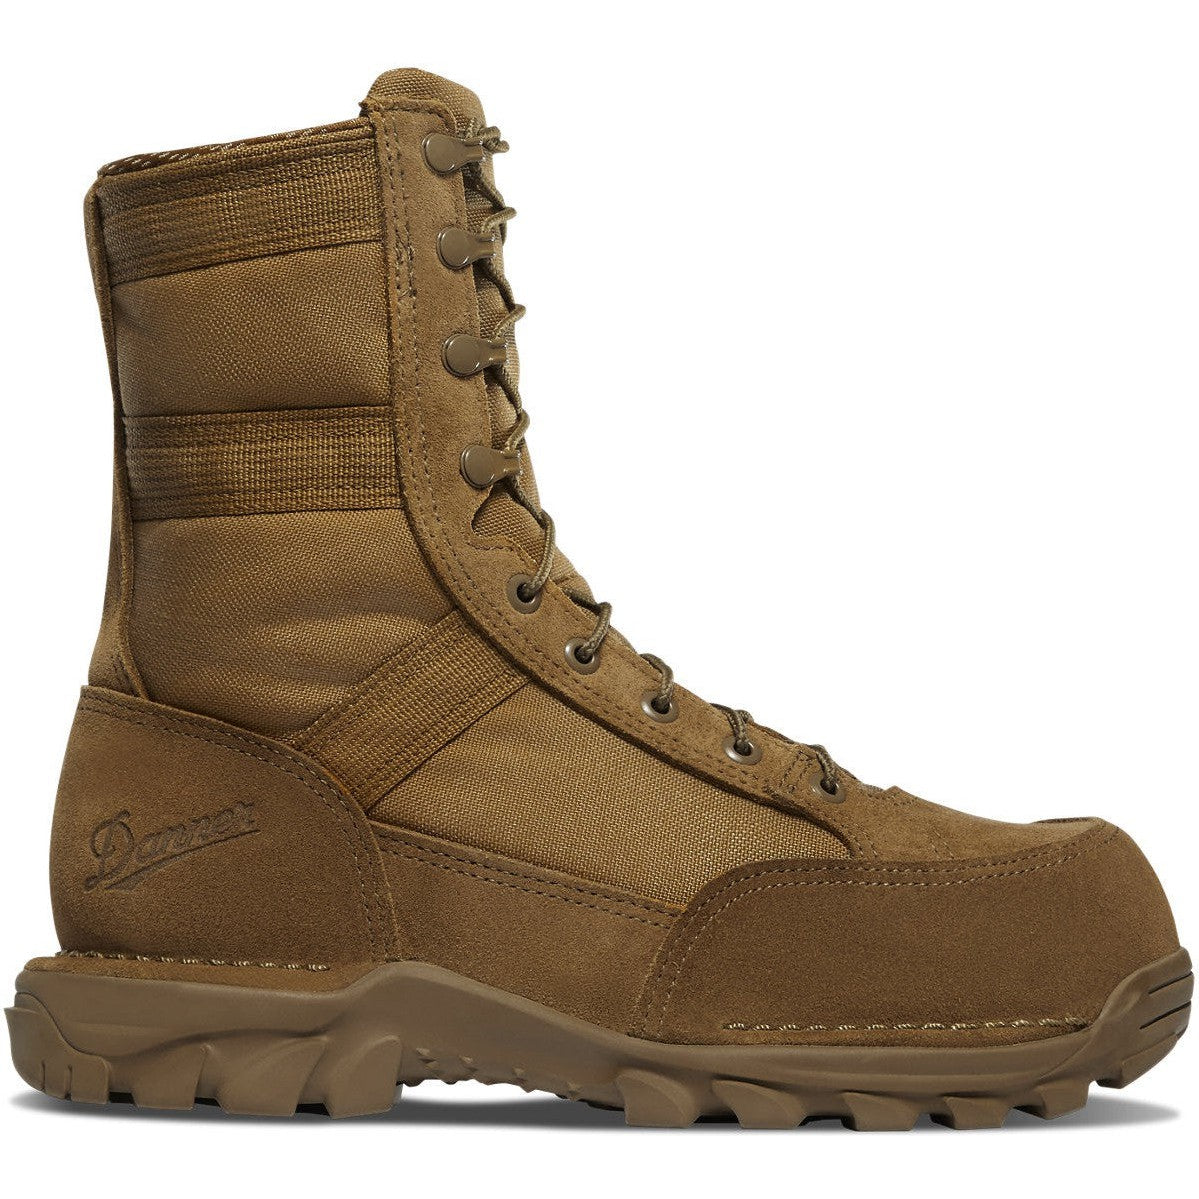 Danner Men's Rivot TFX Comp Toe Military Work Boot -Coyote- 51512 6 / Medium / Coyote - Overlook Boots